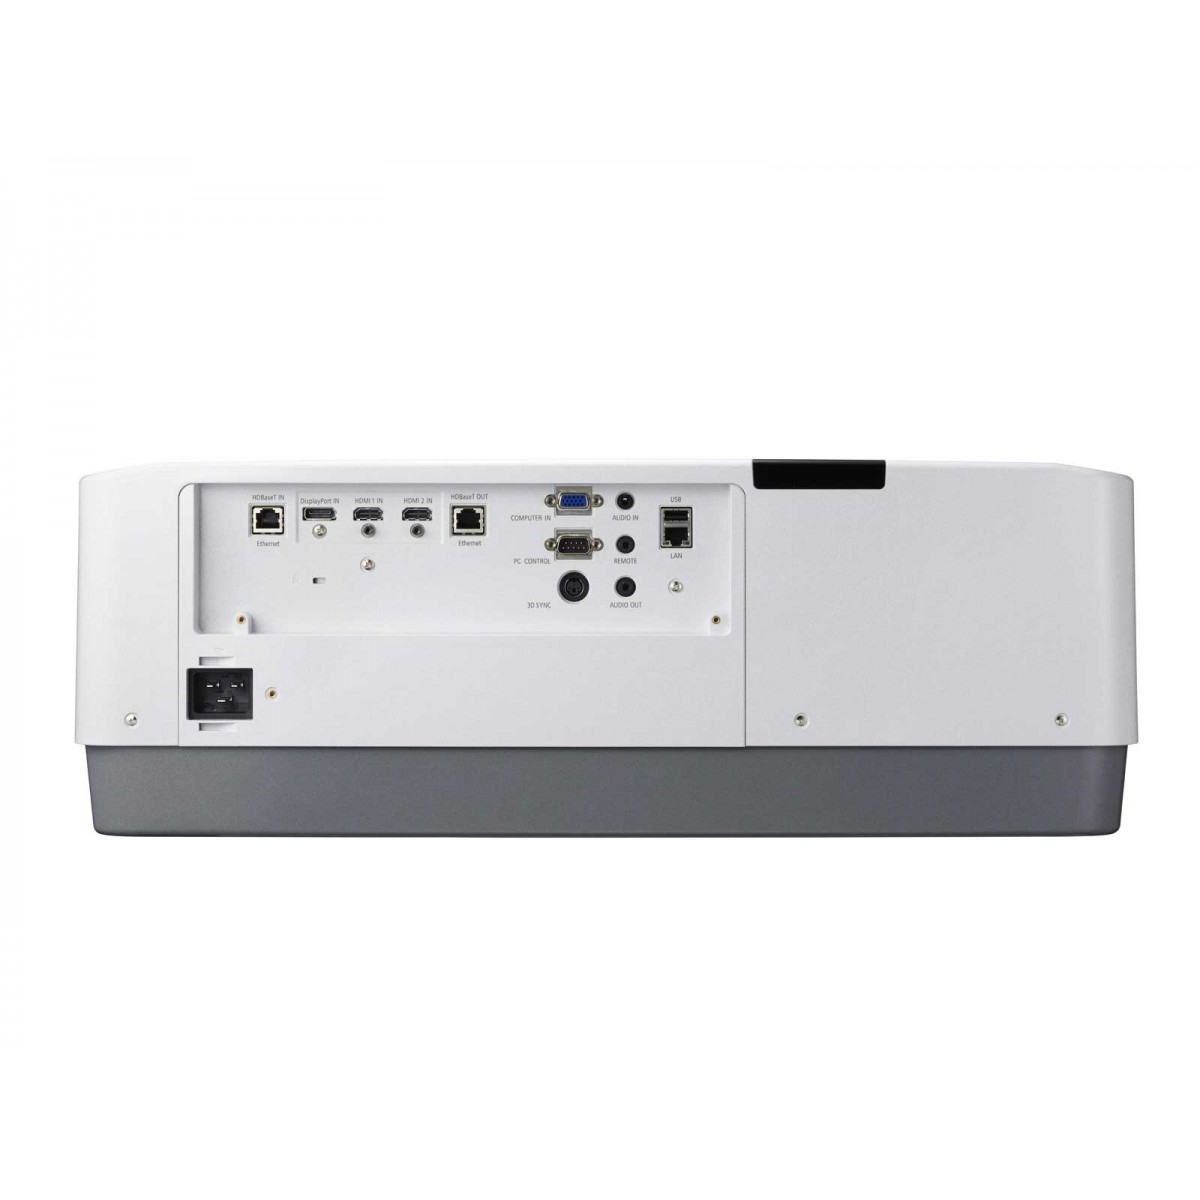 NEC PA703UL projektor danych 7000 ANSI lumeny 3LCD WUXGA (1920x1200) Projektor pulpitowy Biały